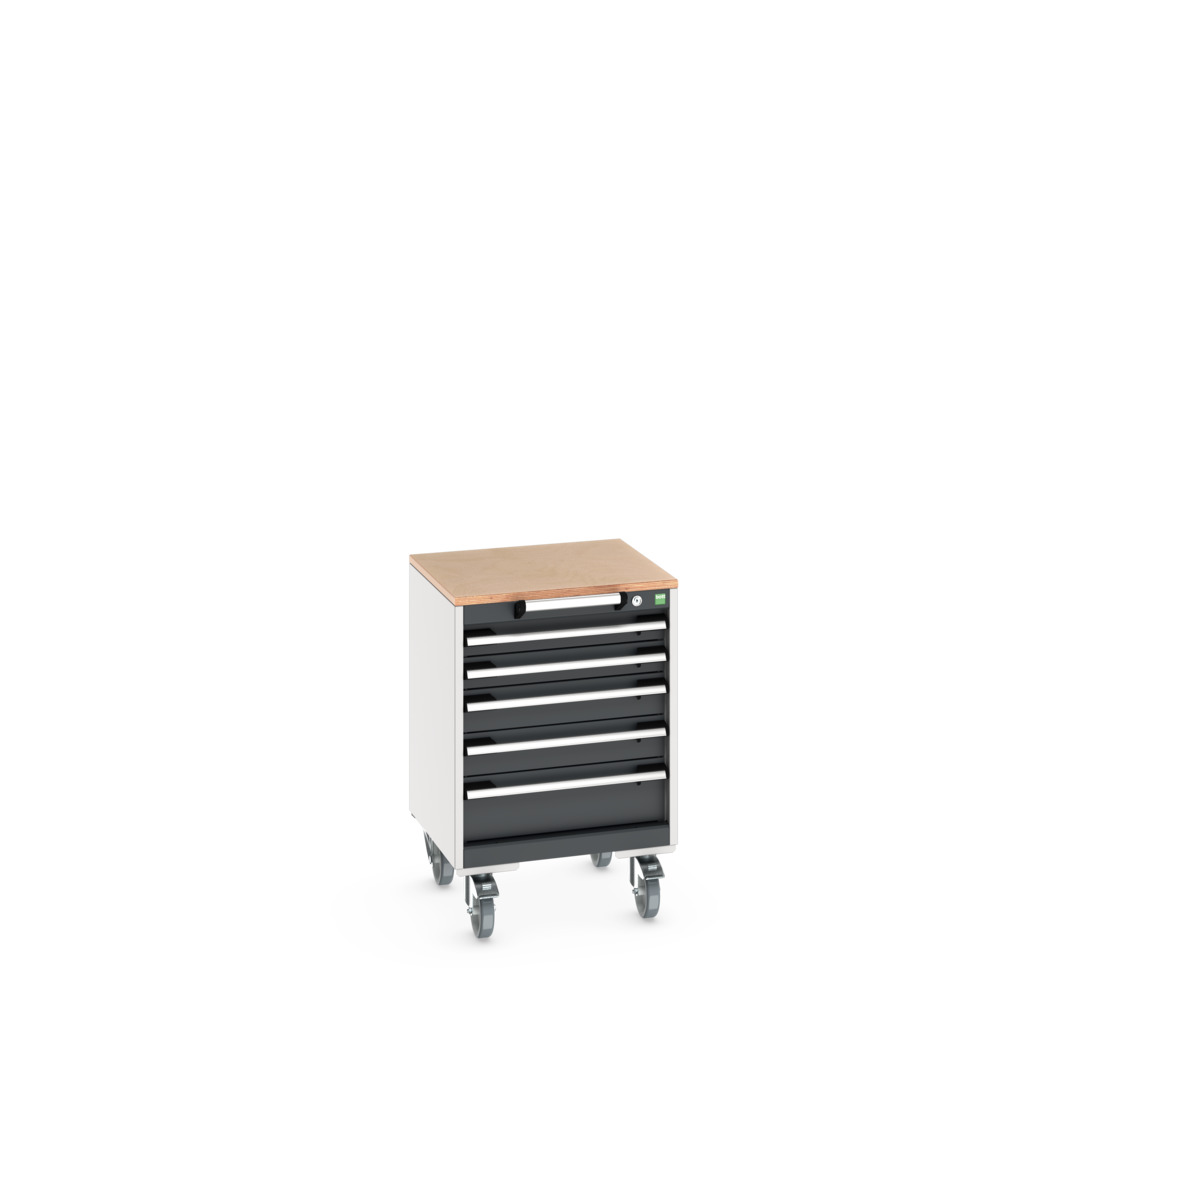 40402135. - cubio mobile cabinet